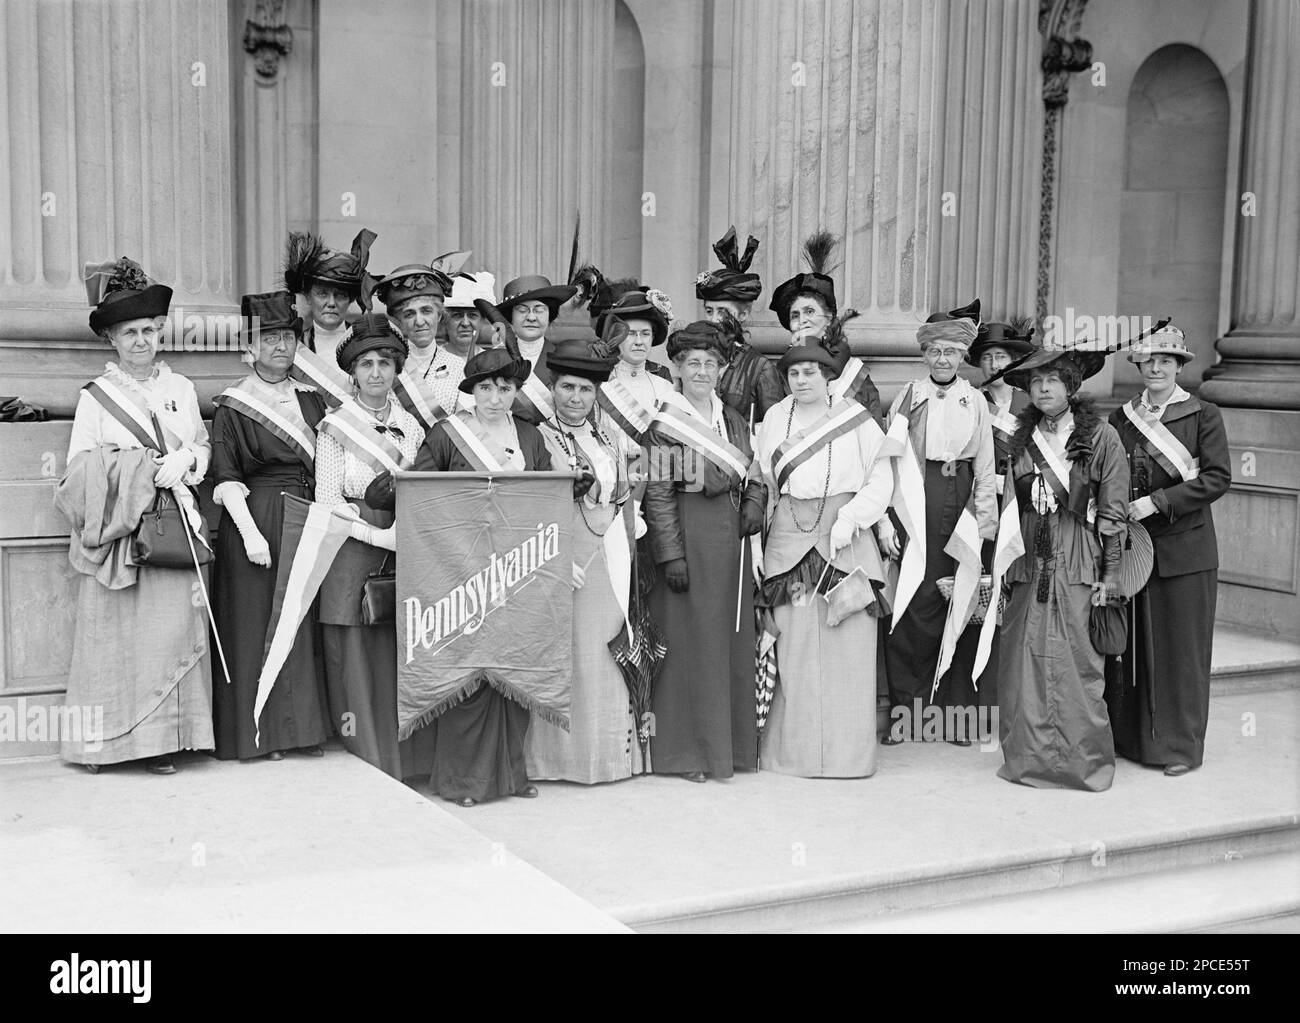 1917 , Washington , USA :  Photo shows women suffrage   PENNSYLVANIA pickets . Photo by Harris and Ewing -SUFFRAGETTE - SUFFRAGETTA - sufraggetta - Sufragist - POLITICO - POLITICIAN - POLITICA - POLITIC - FEMMINISMO - FEMMINISTA  - FEMMINISTE - SUFFRAGETTE - USA - ritratto - portrait -  FLAG - BANDIERA -  STATI UNITI d' AMERICA - FEMMINISM - FEMMINIST - SUFFRAGIO UNIVERSALE - VOTO POLITICO ALLE DONNE - hat - cappello  - FASHION - MODA  - - FOTO DI GRUPPO -  PER LA DIFESA DEI DIRITTI DELLE DONNE - picchetto - picchettaggio  - ANNI DIECI - '10 - 10's ----  Archivio GBB Stock Photo